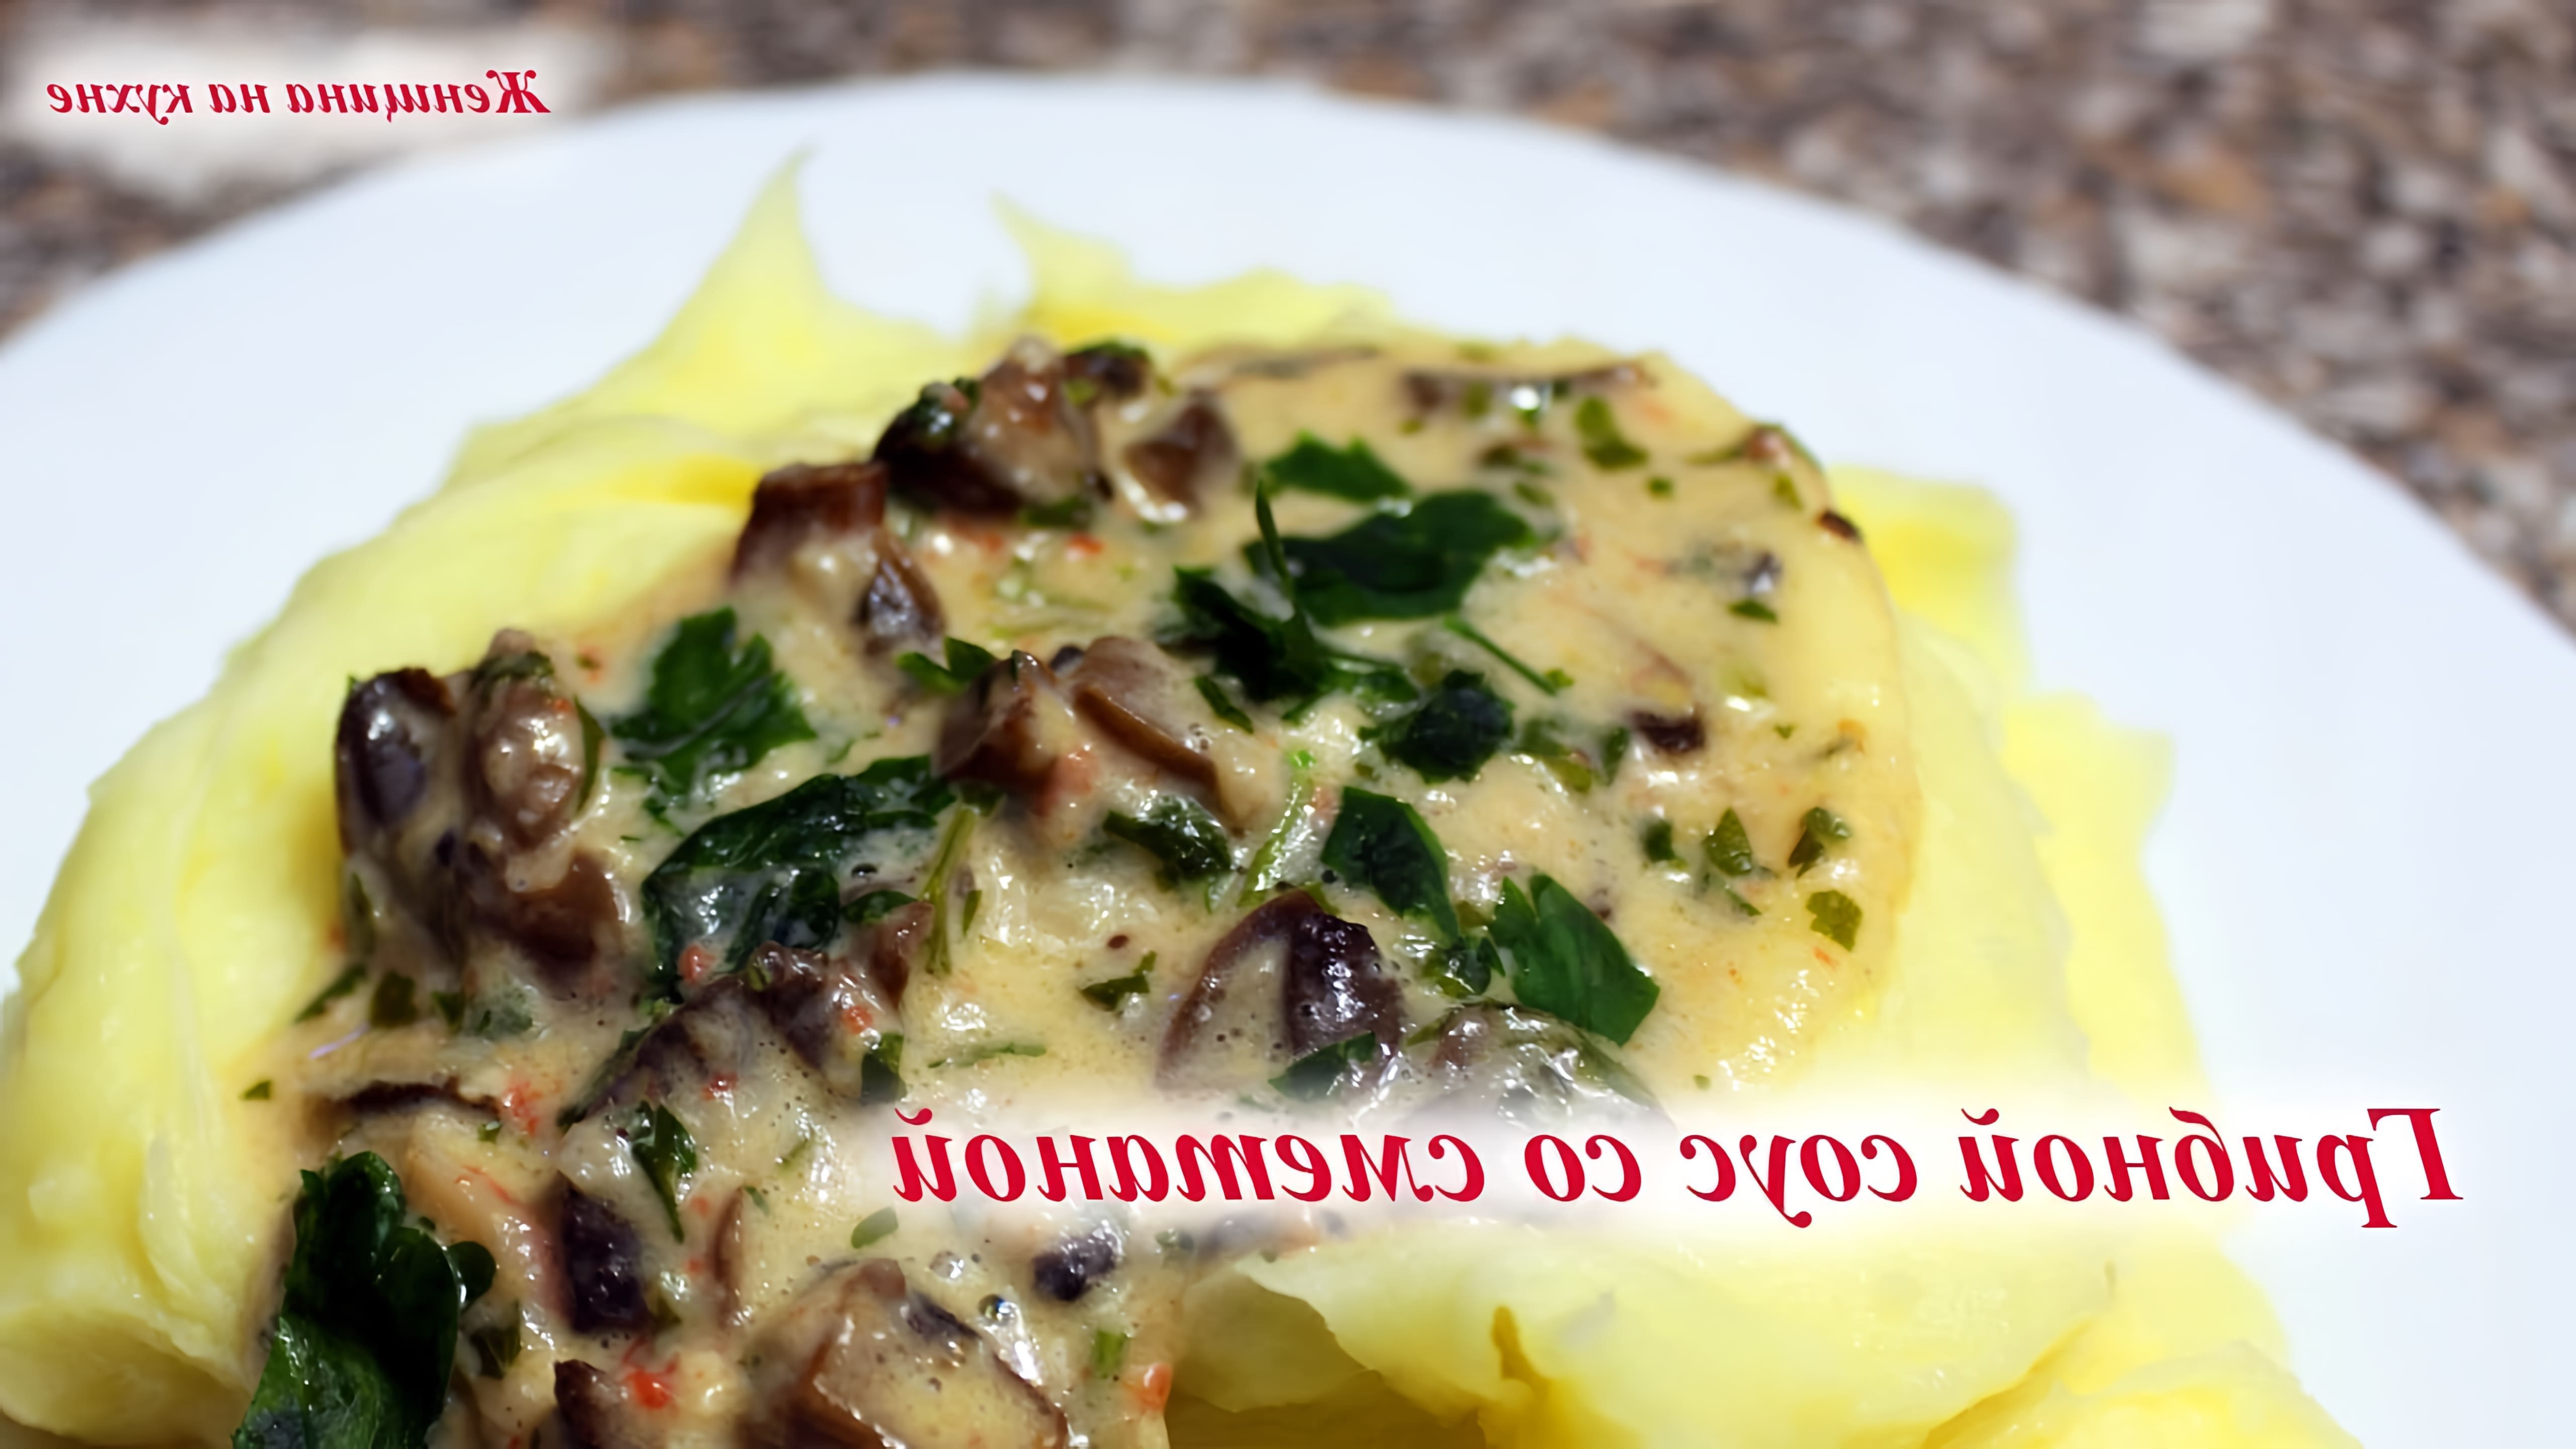 В этом видео демонстрируется рецепт грибного соуса со сметаной, сыром и крабами